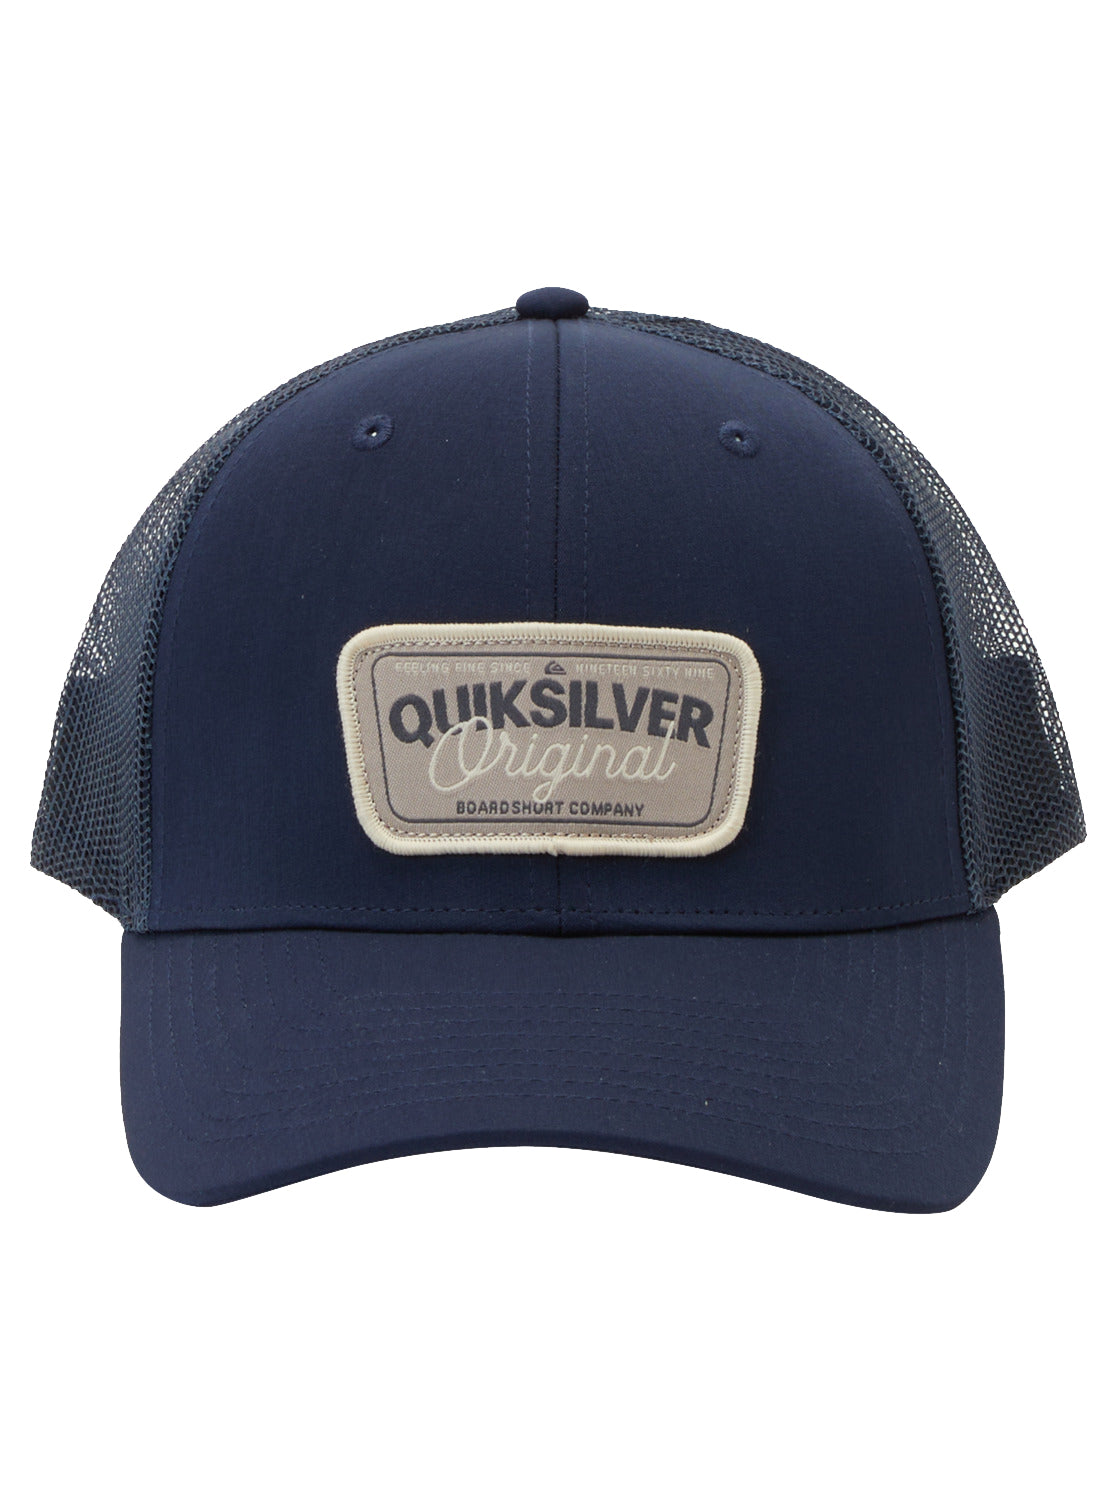 Quiksilver Reeled In Trucker Hat.